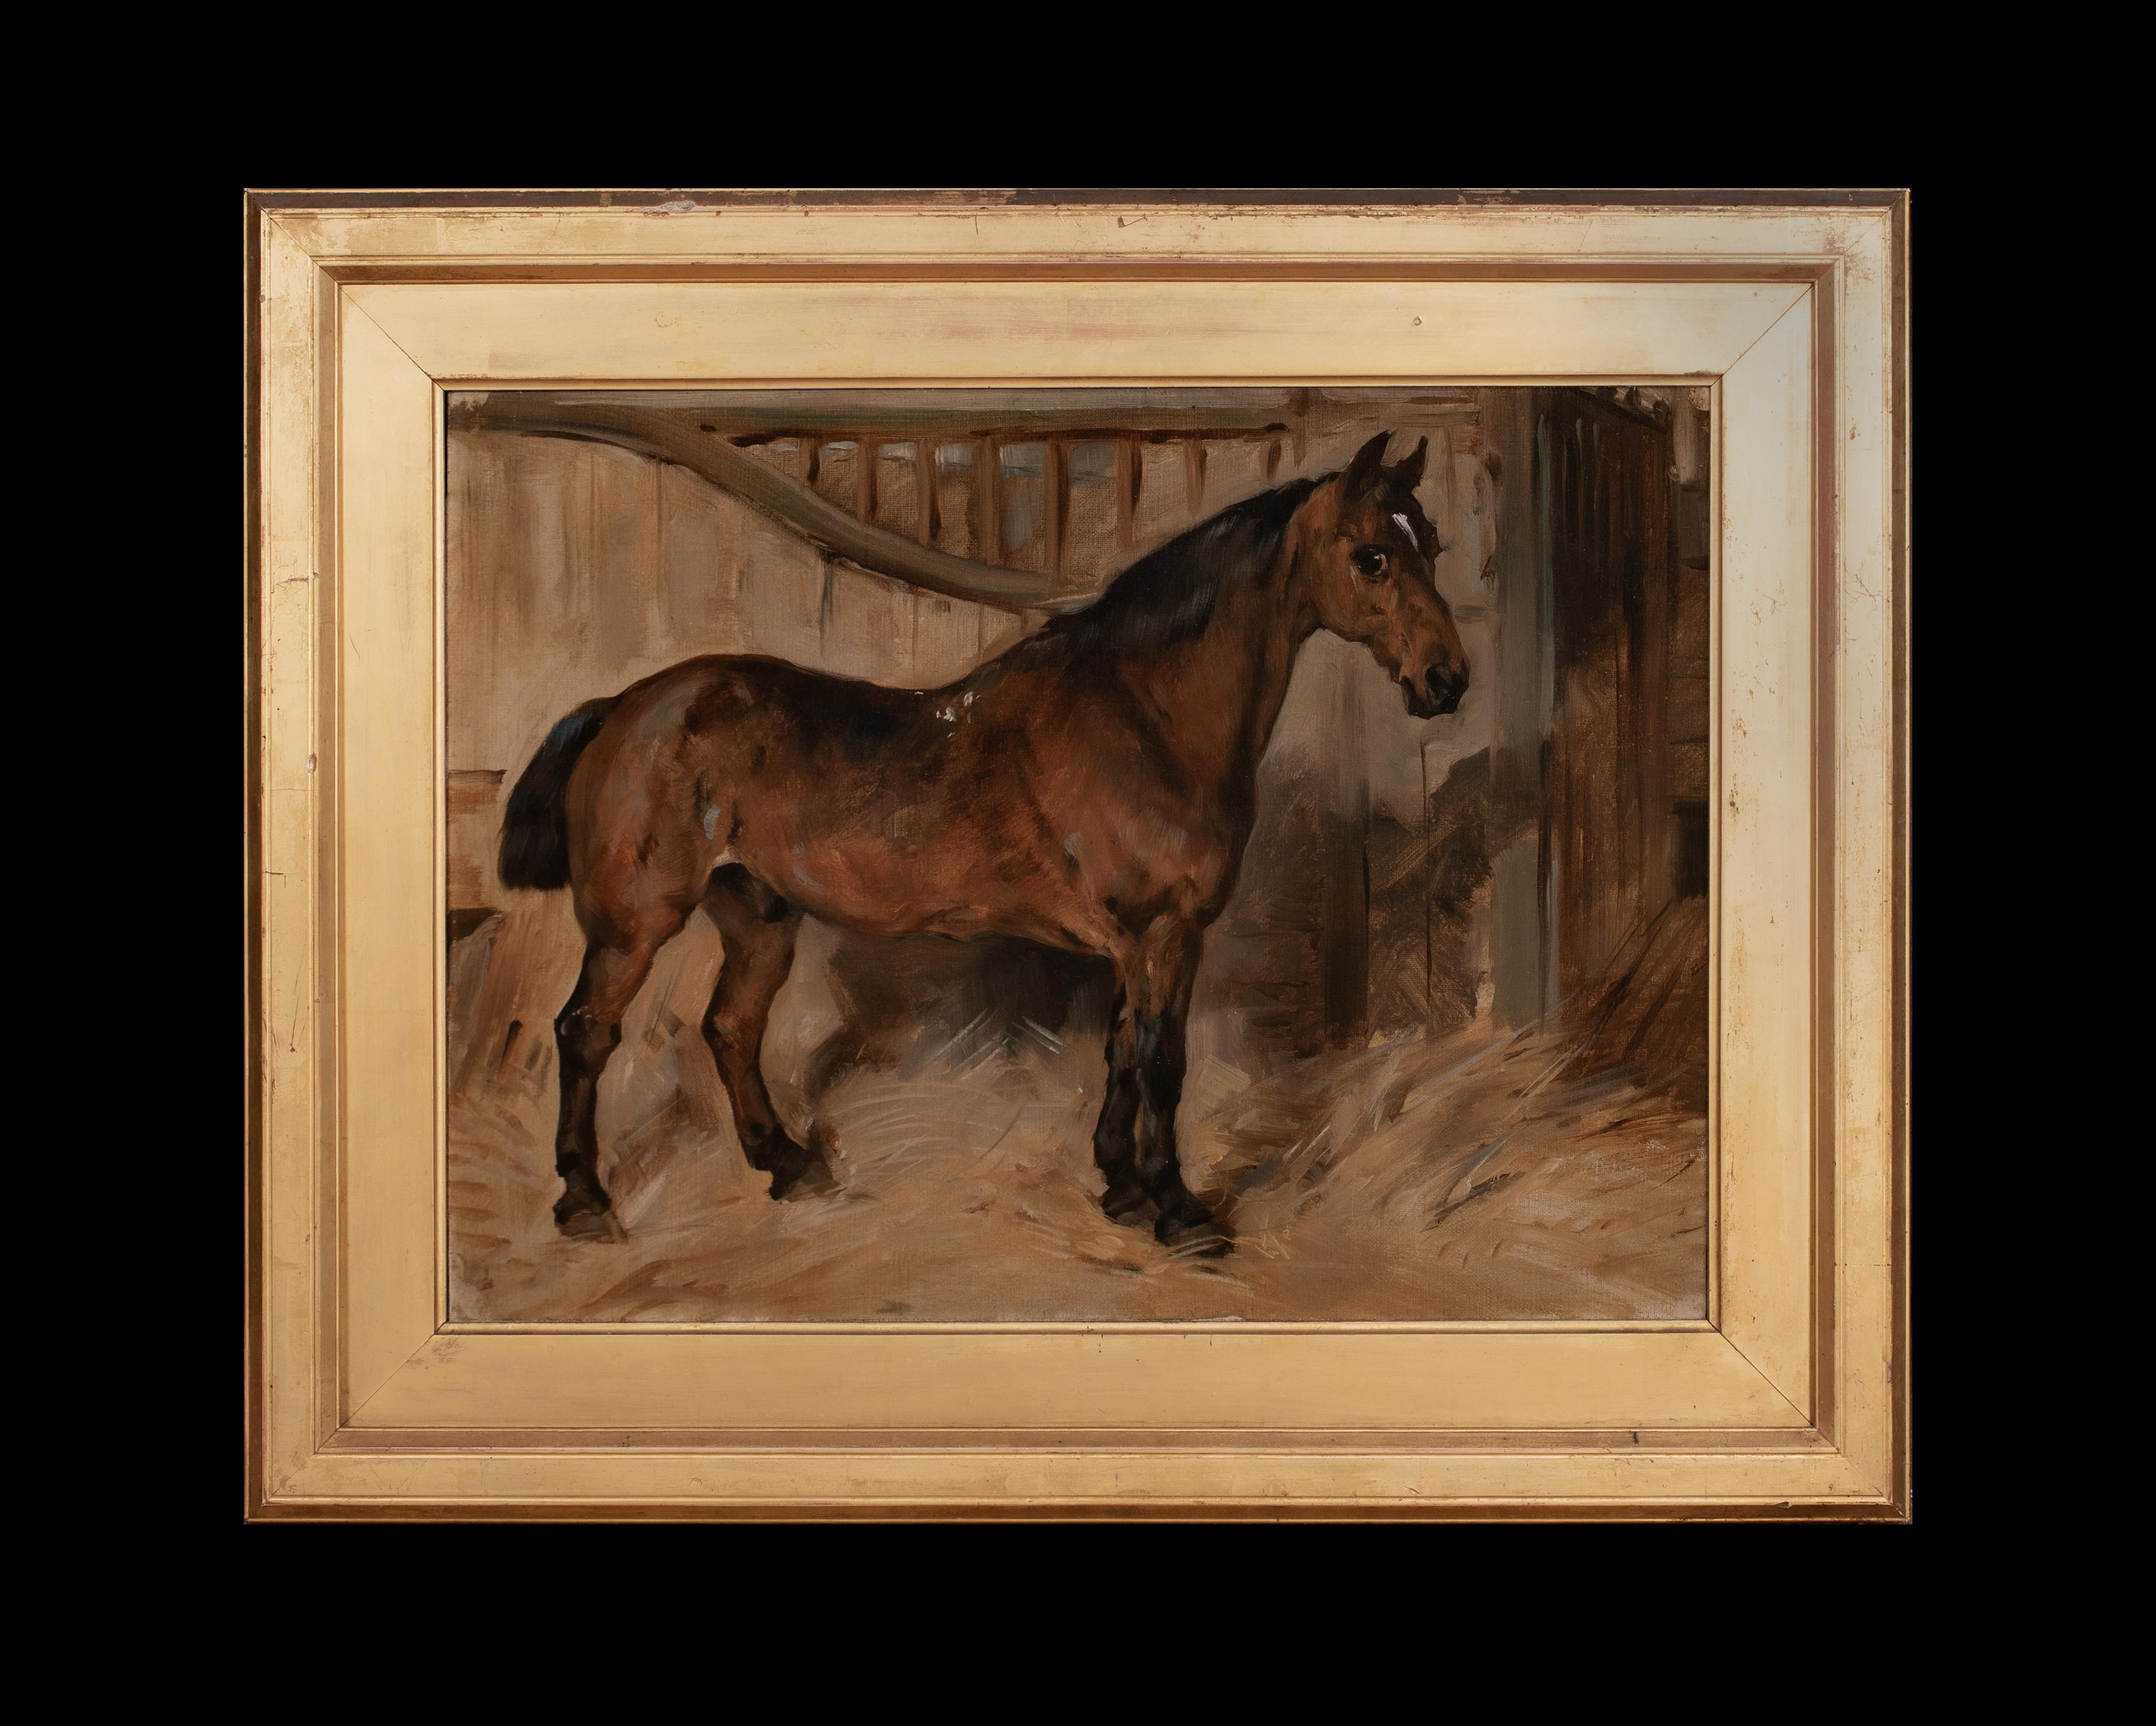 Grand portrait d'un cheval d'attelage du 19e siècle, 19e siècle  par JOHN EMMS  - Painting de John Emms